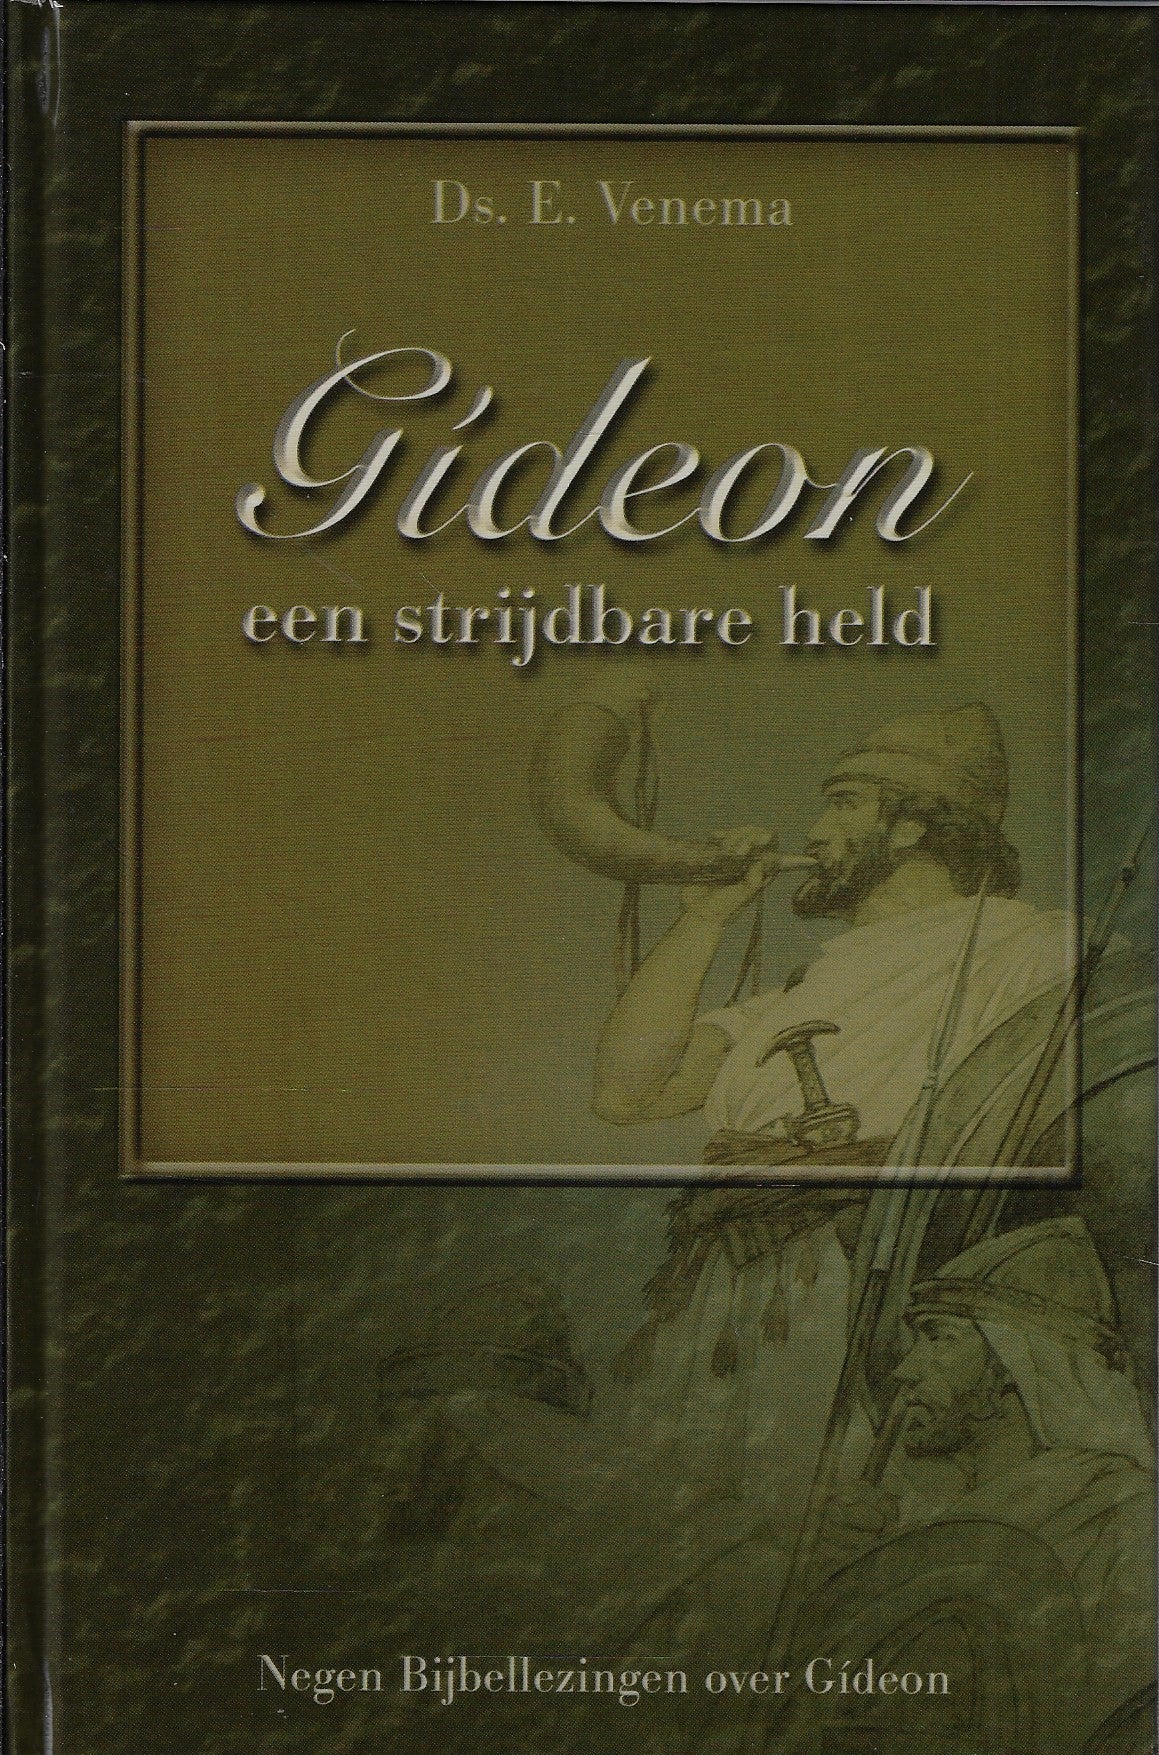 Gideon, een strijdbare held